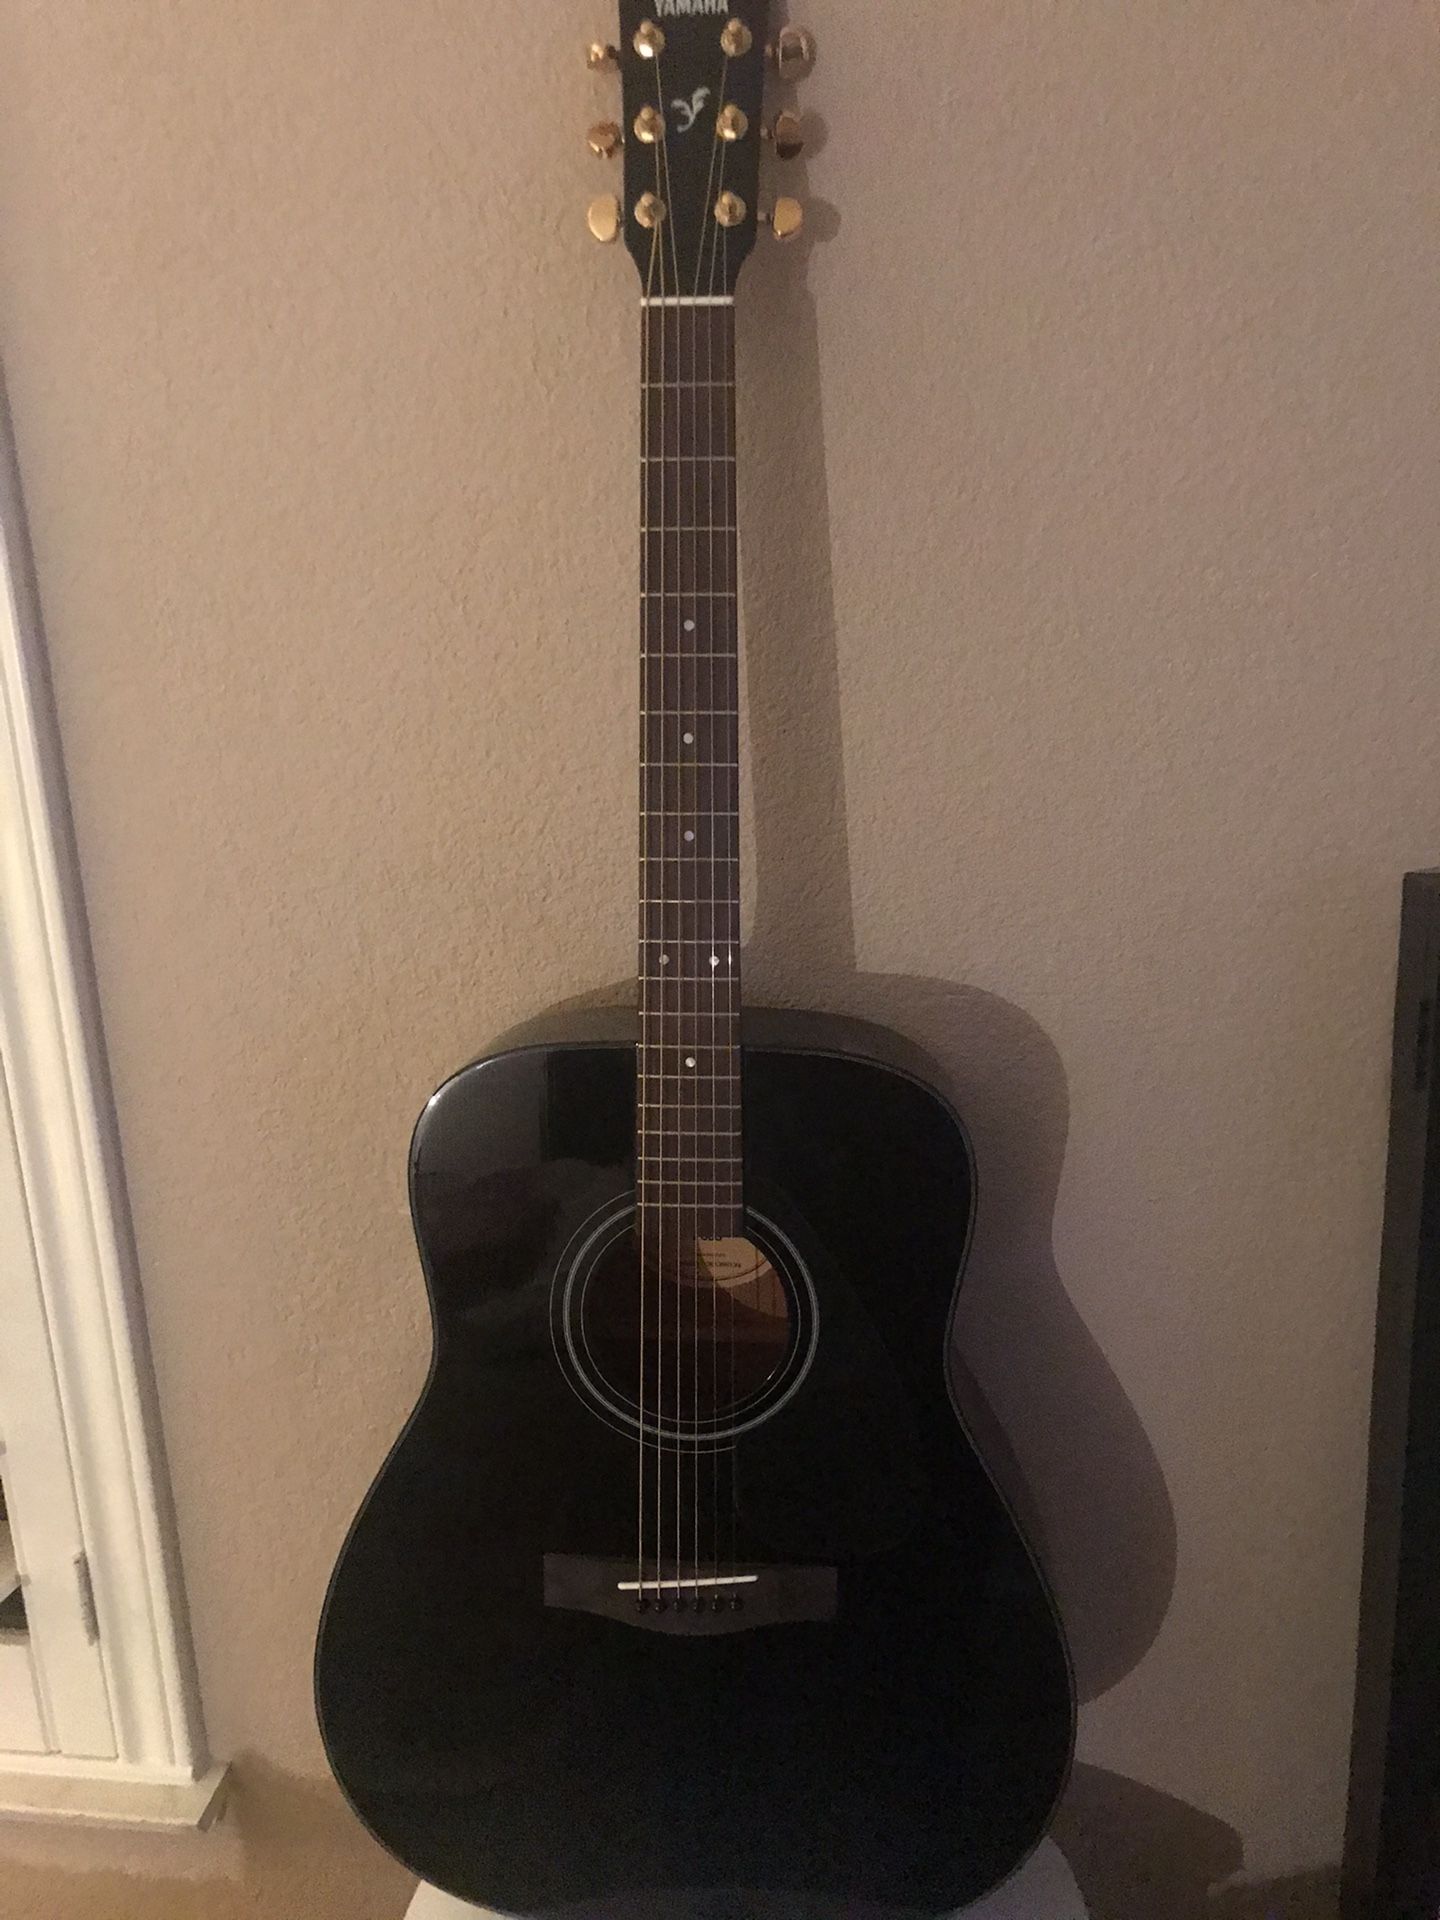 Yamaha Guitar Set